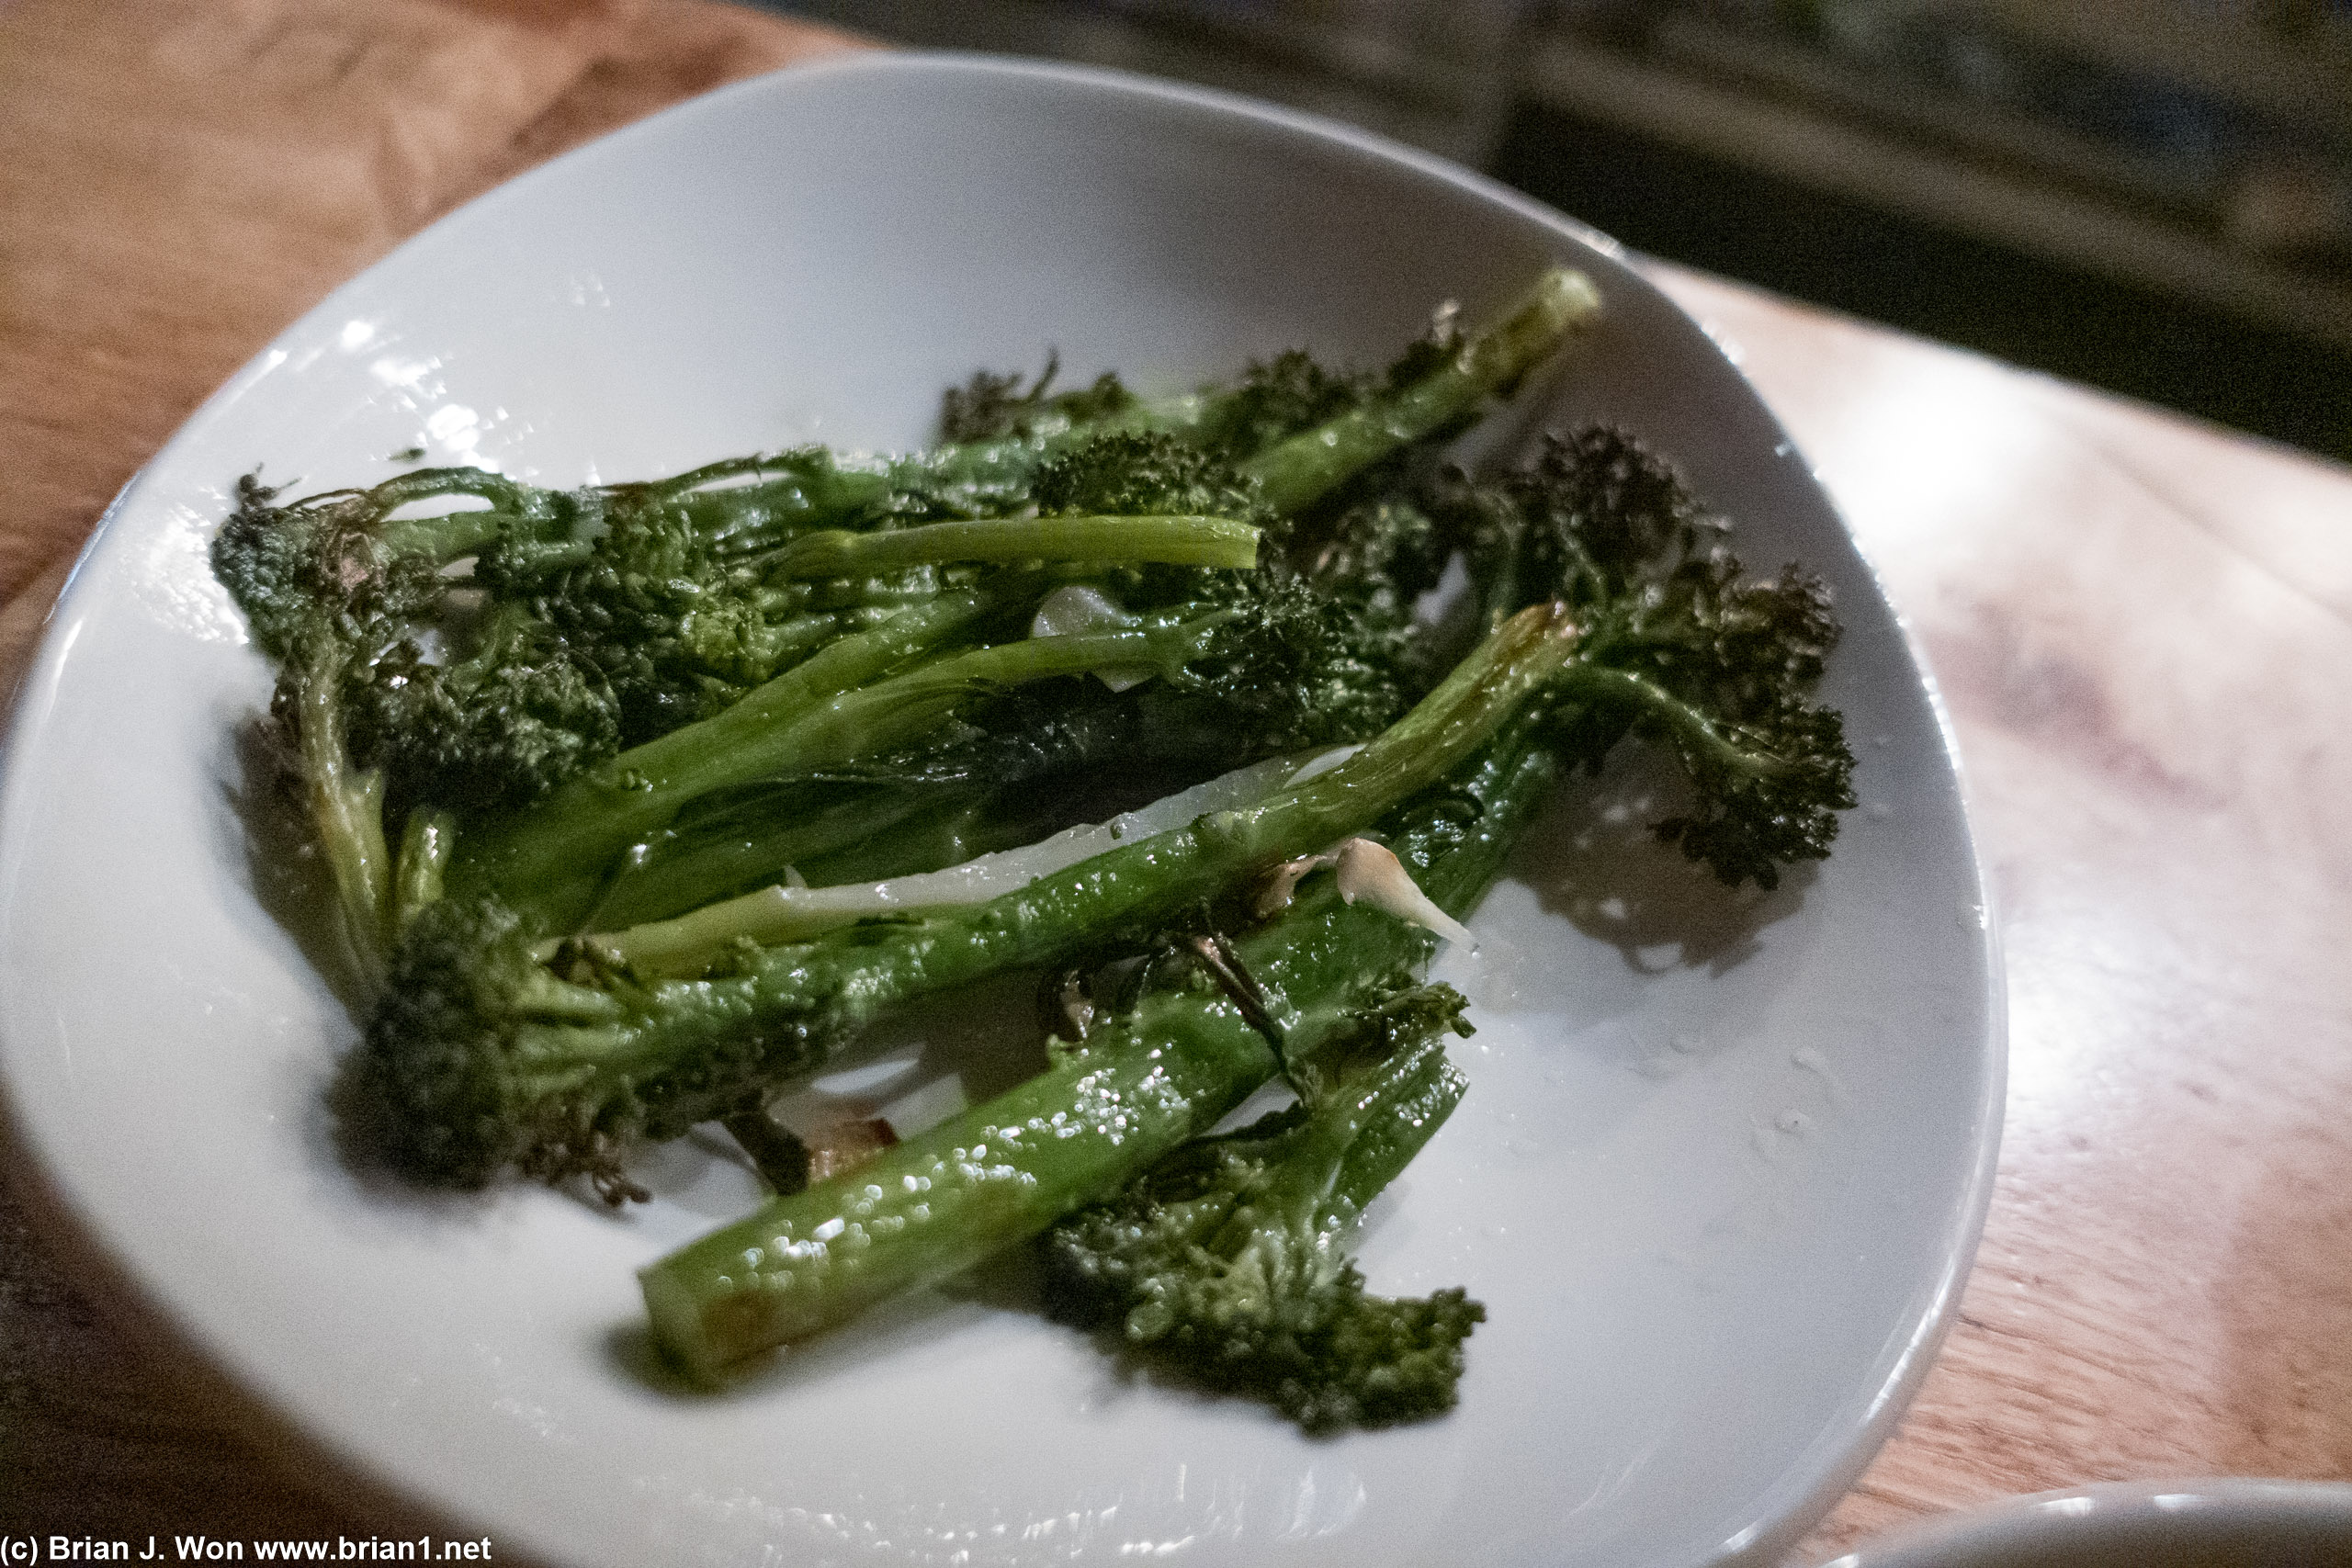 Broccolini was quite good. Garlic and salt, quite simple.